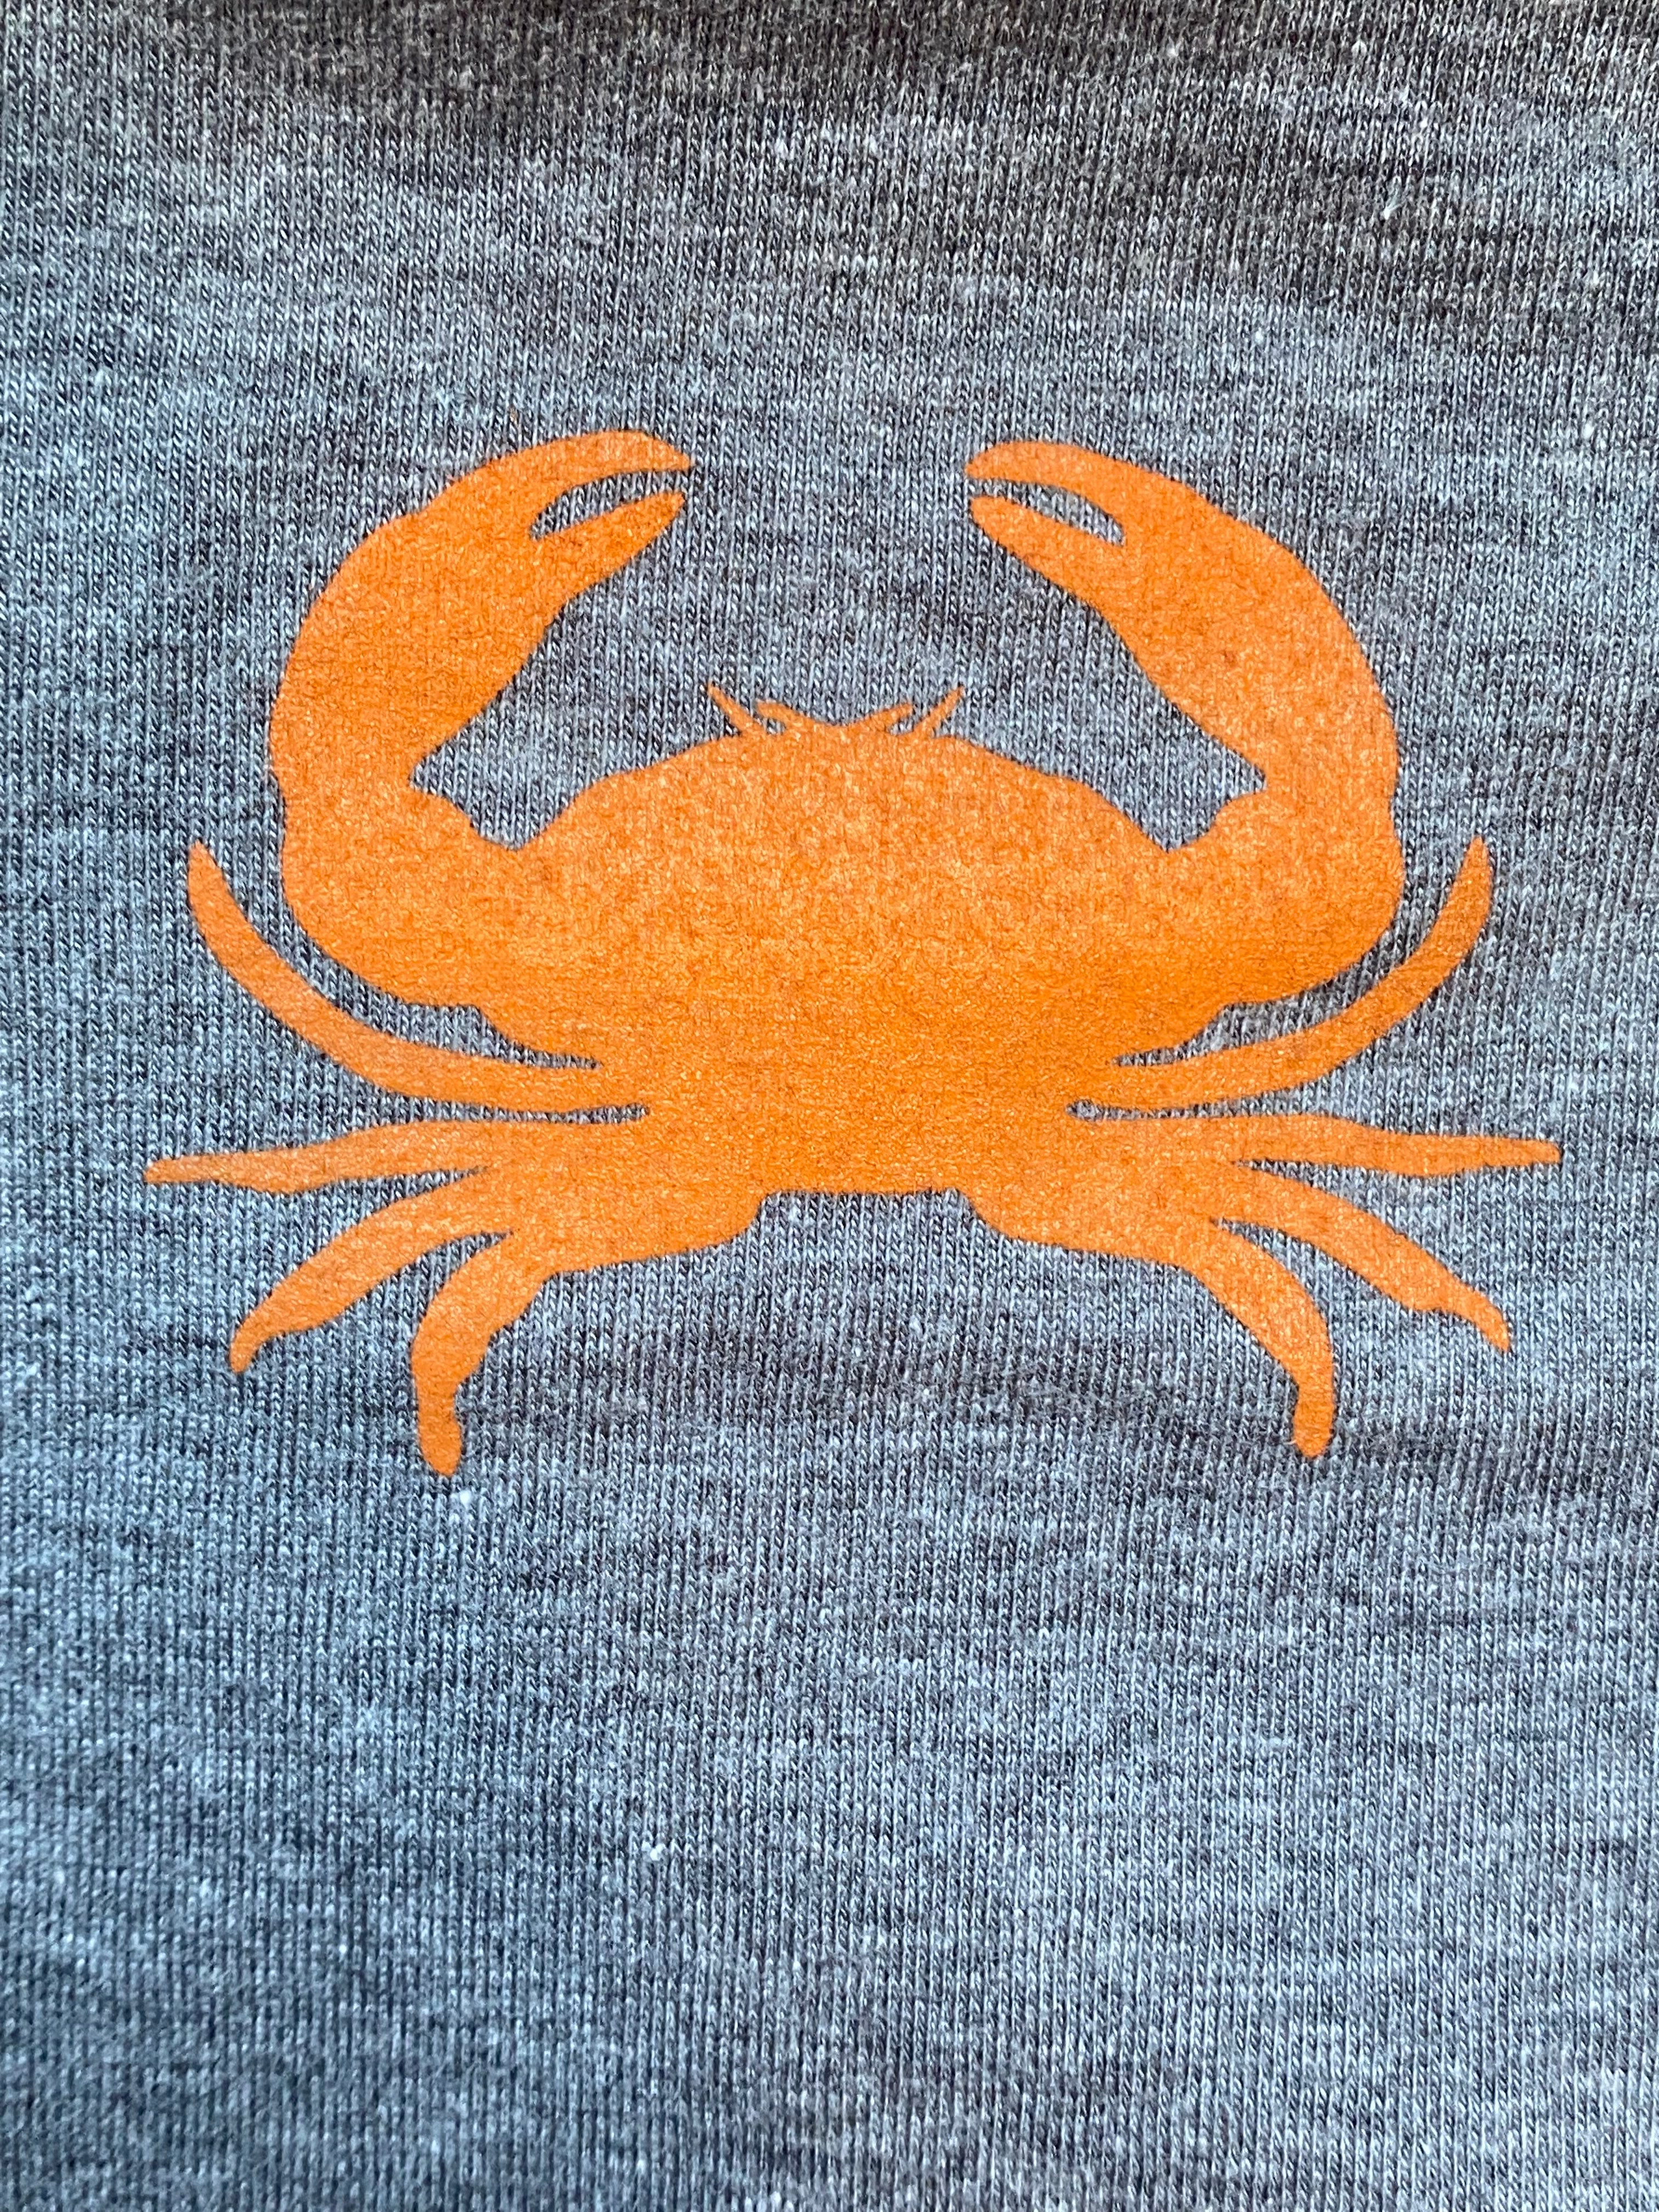 T Shirt w/Crab Logo